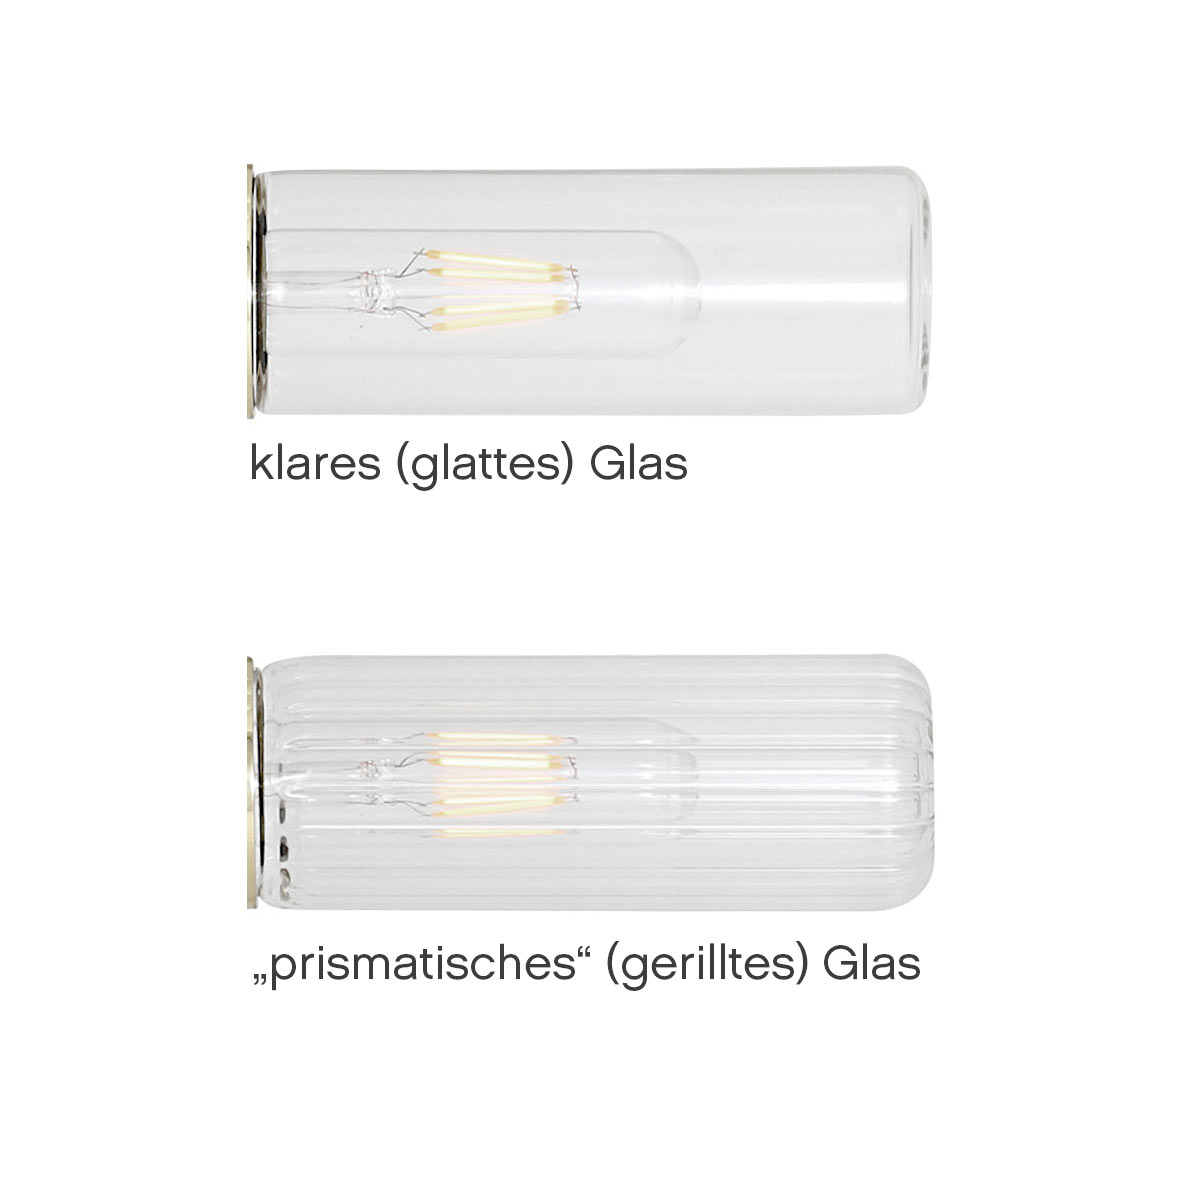 Bad-Deckenlampe mit kleinem Glas-Zylinder (klar oder prismatisch), IP65, Bild 3